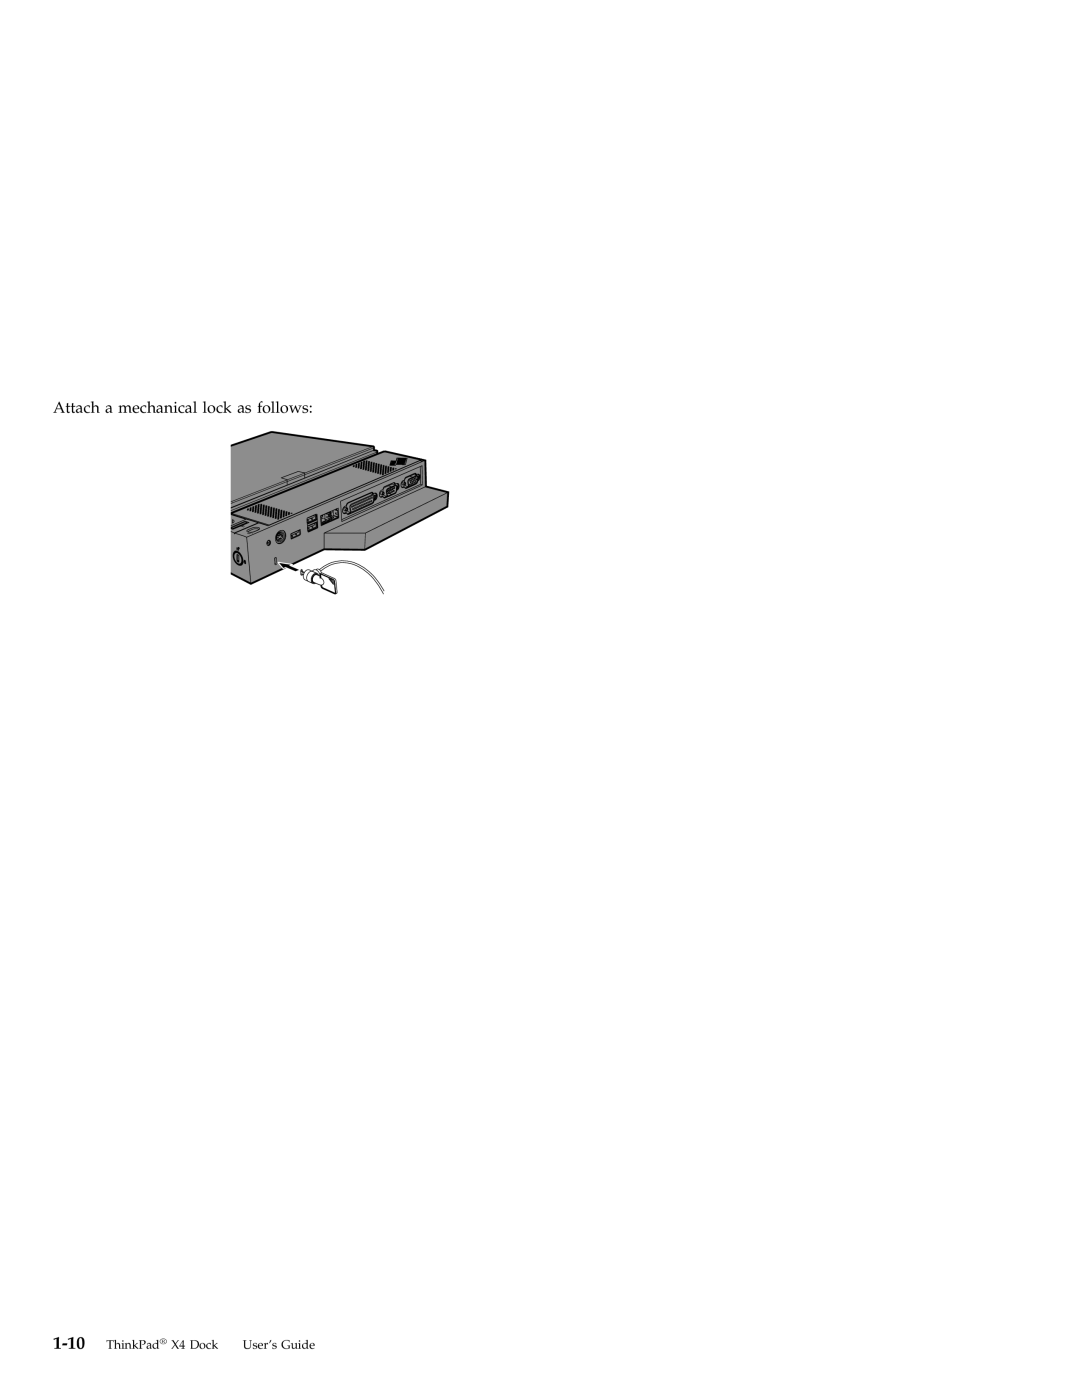 IBM manual Attach a mechanical lock as follows, ThinkPad X4 Dock User’s Guide 